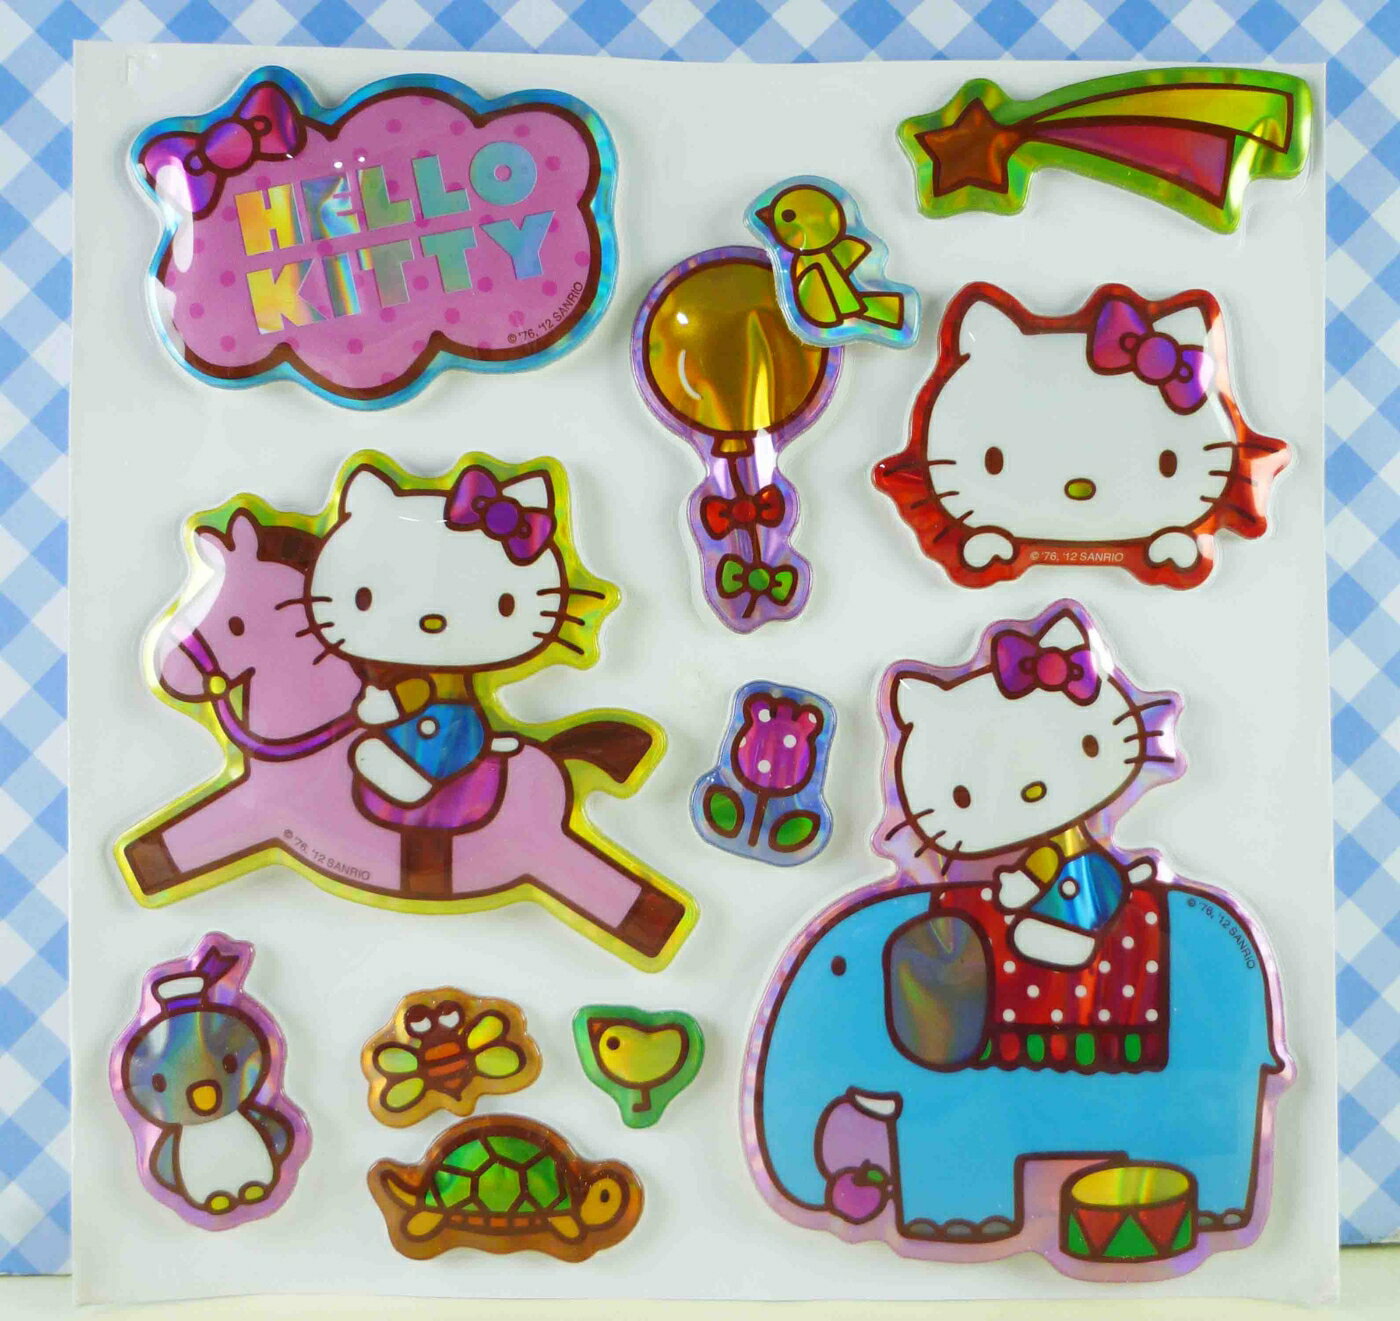 【震撼精品百貨】Hello Kitty 凱蒂貓 KITTY立體貼紙-3D馬 震撼日式精品百貨